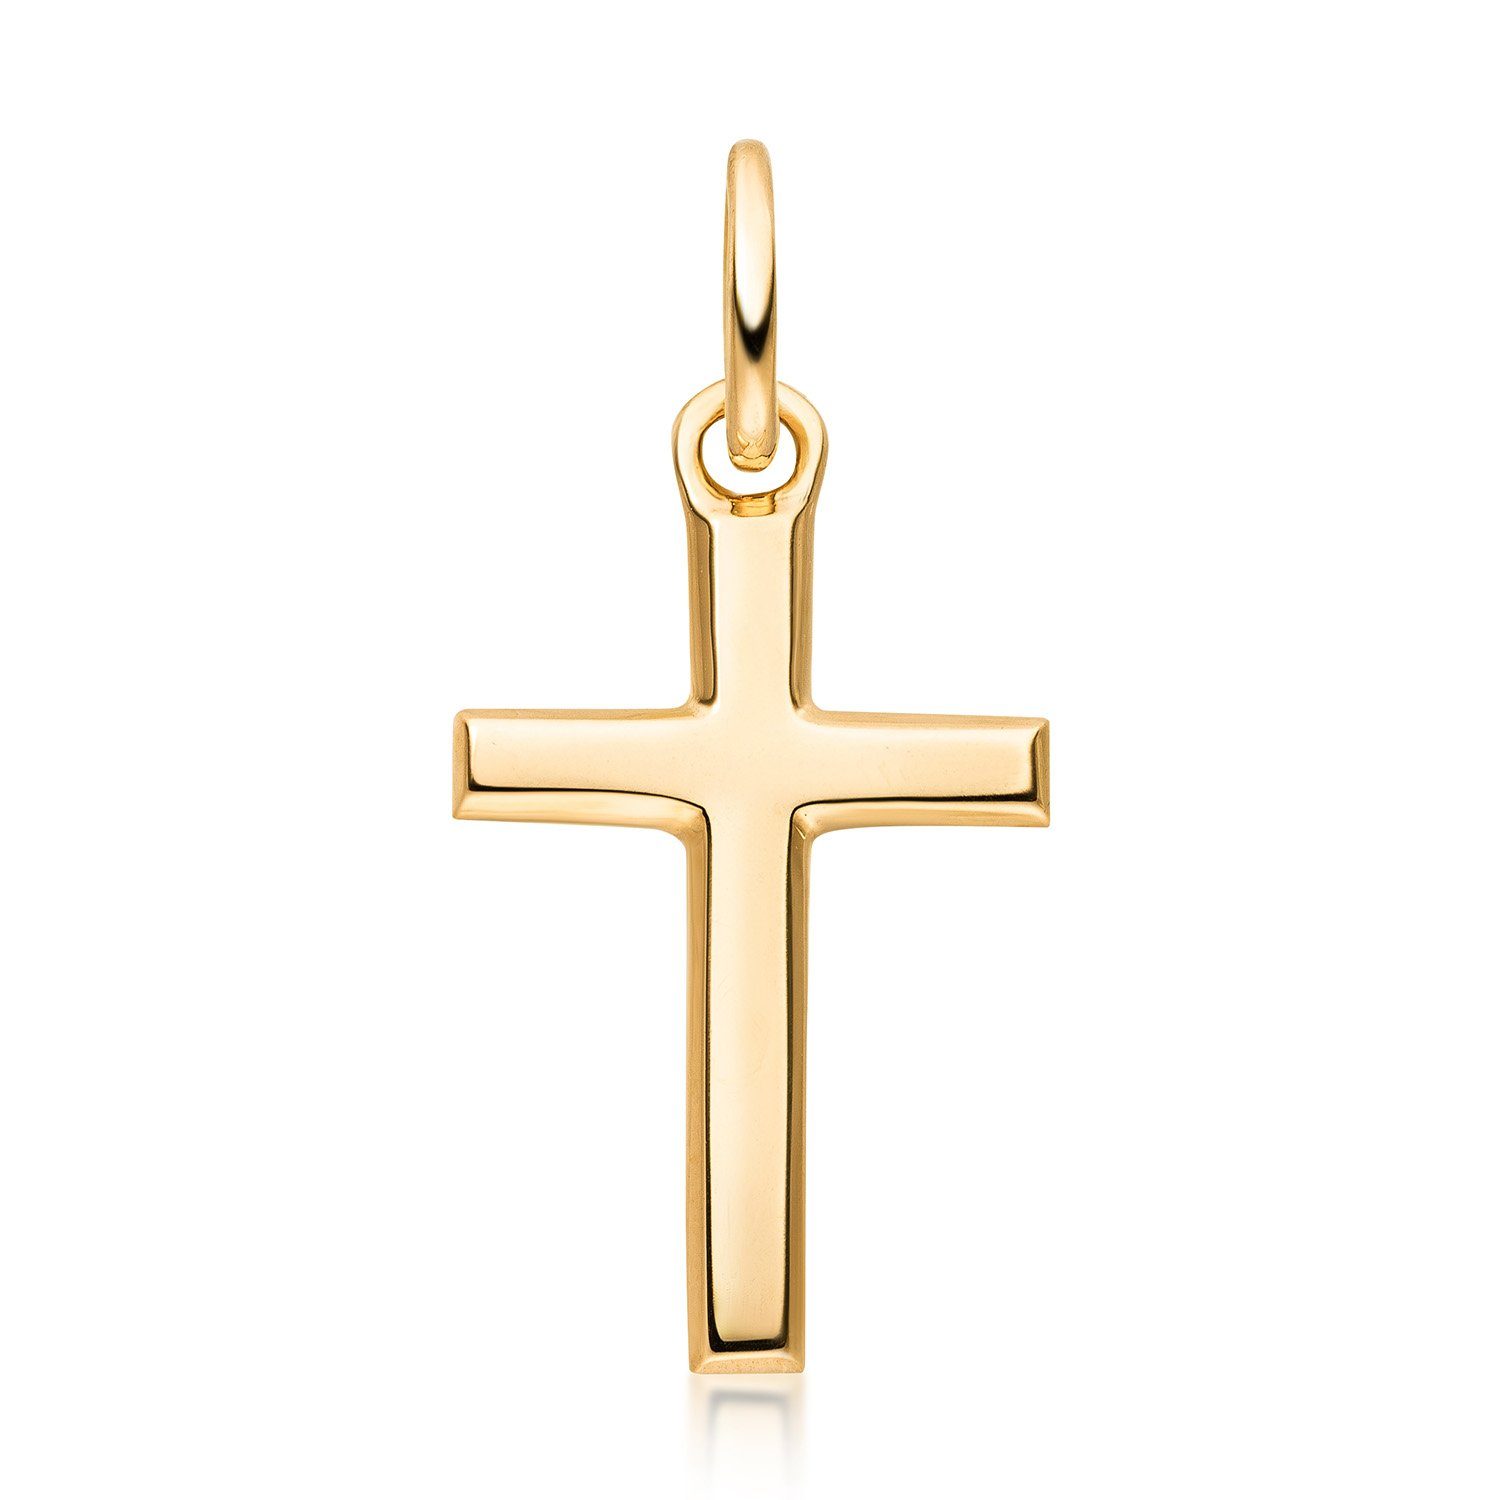 Materia Kreuzanhänger Kreuz Religion Gold klein minimalistisch GKA-8, 333 Gelbgold